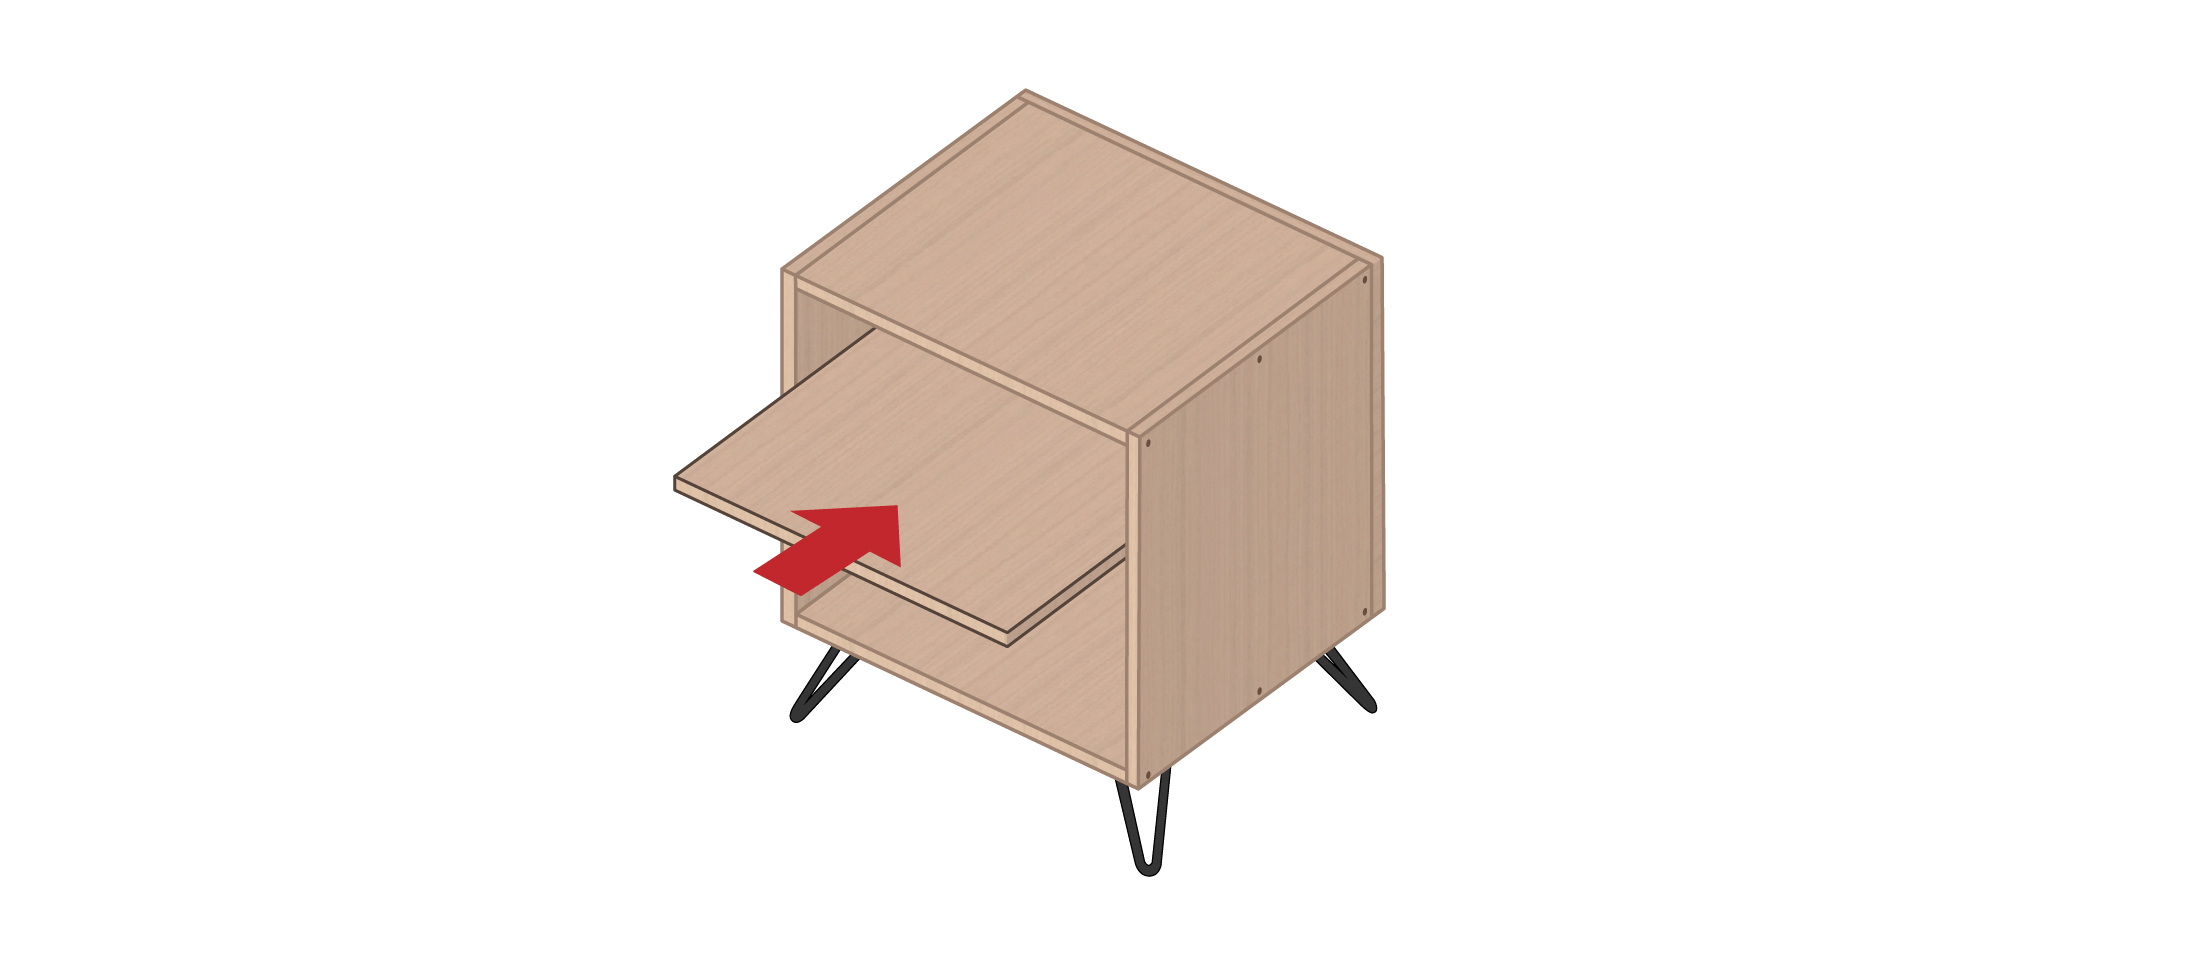 Meuble vinyle DIY : fabriquer un meuble vinyle en 8 étapes